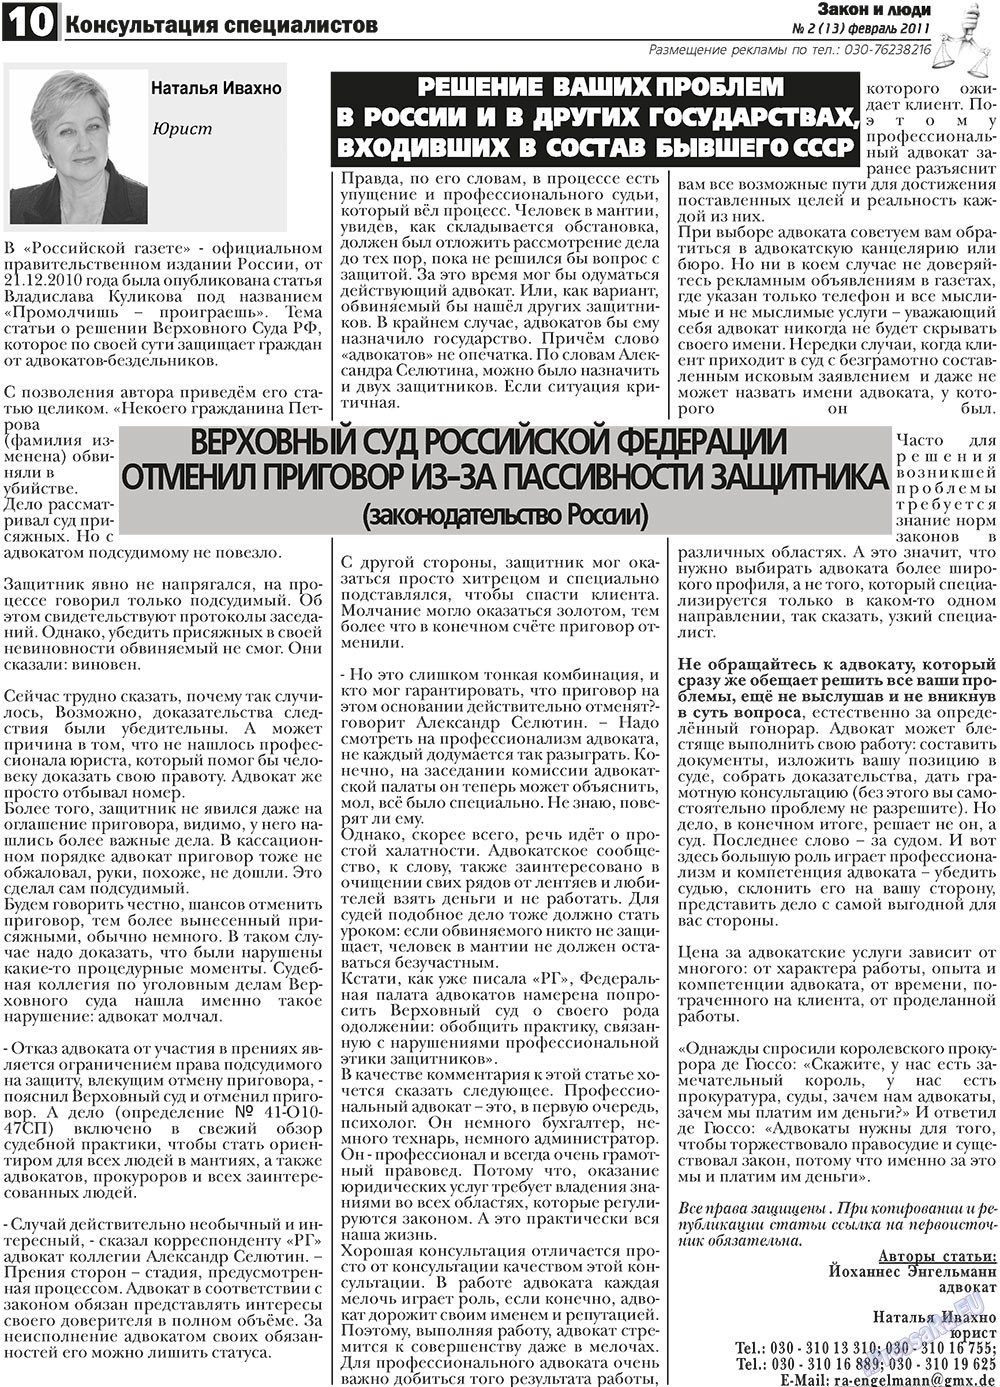 Закон и люди, газета. 2011 №2 стр.10